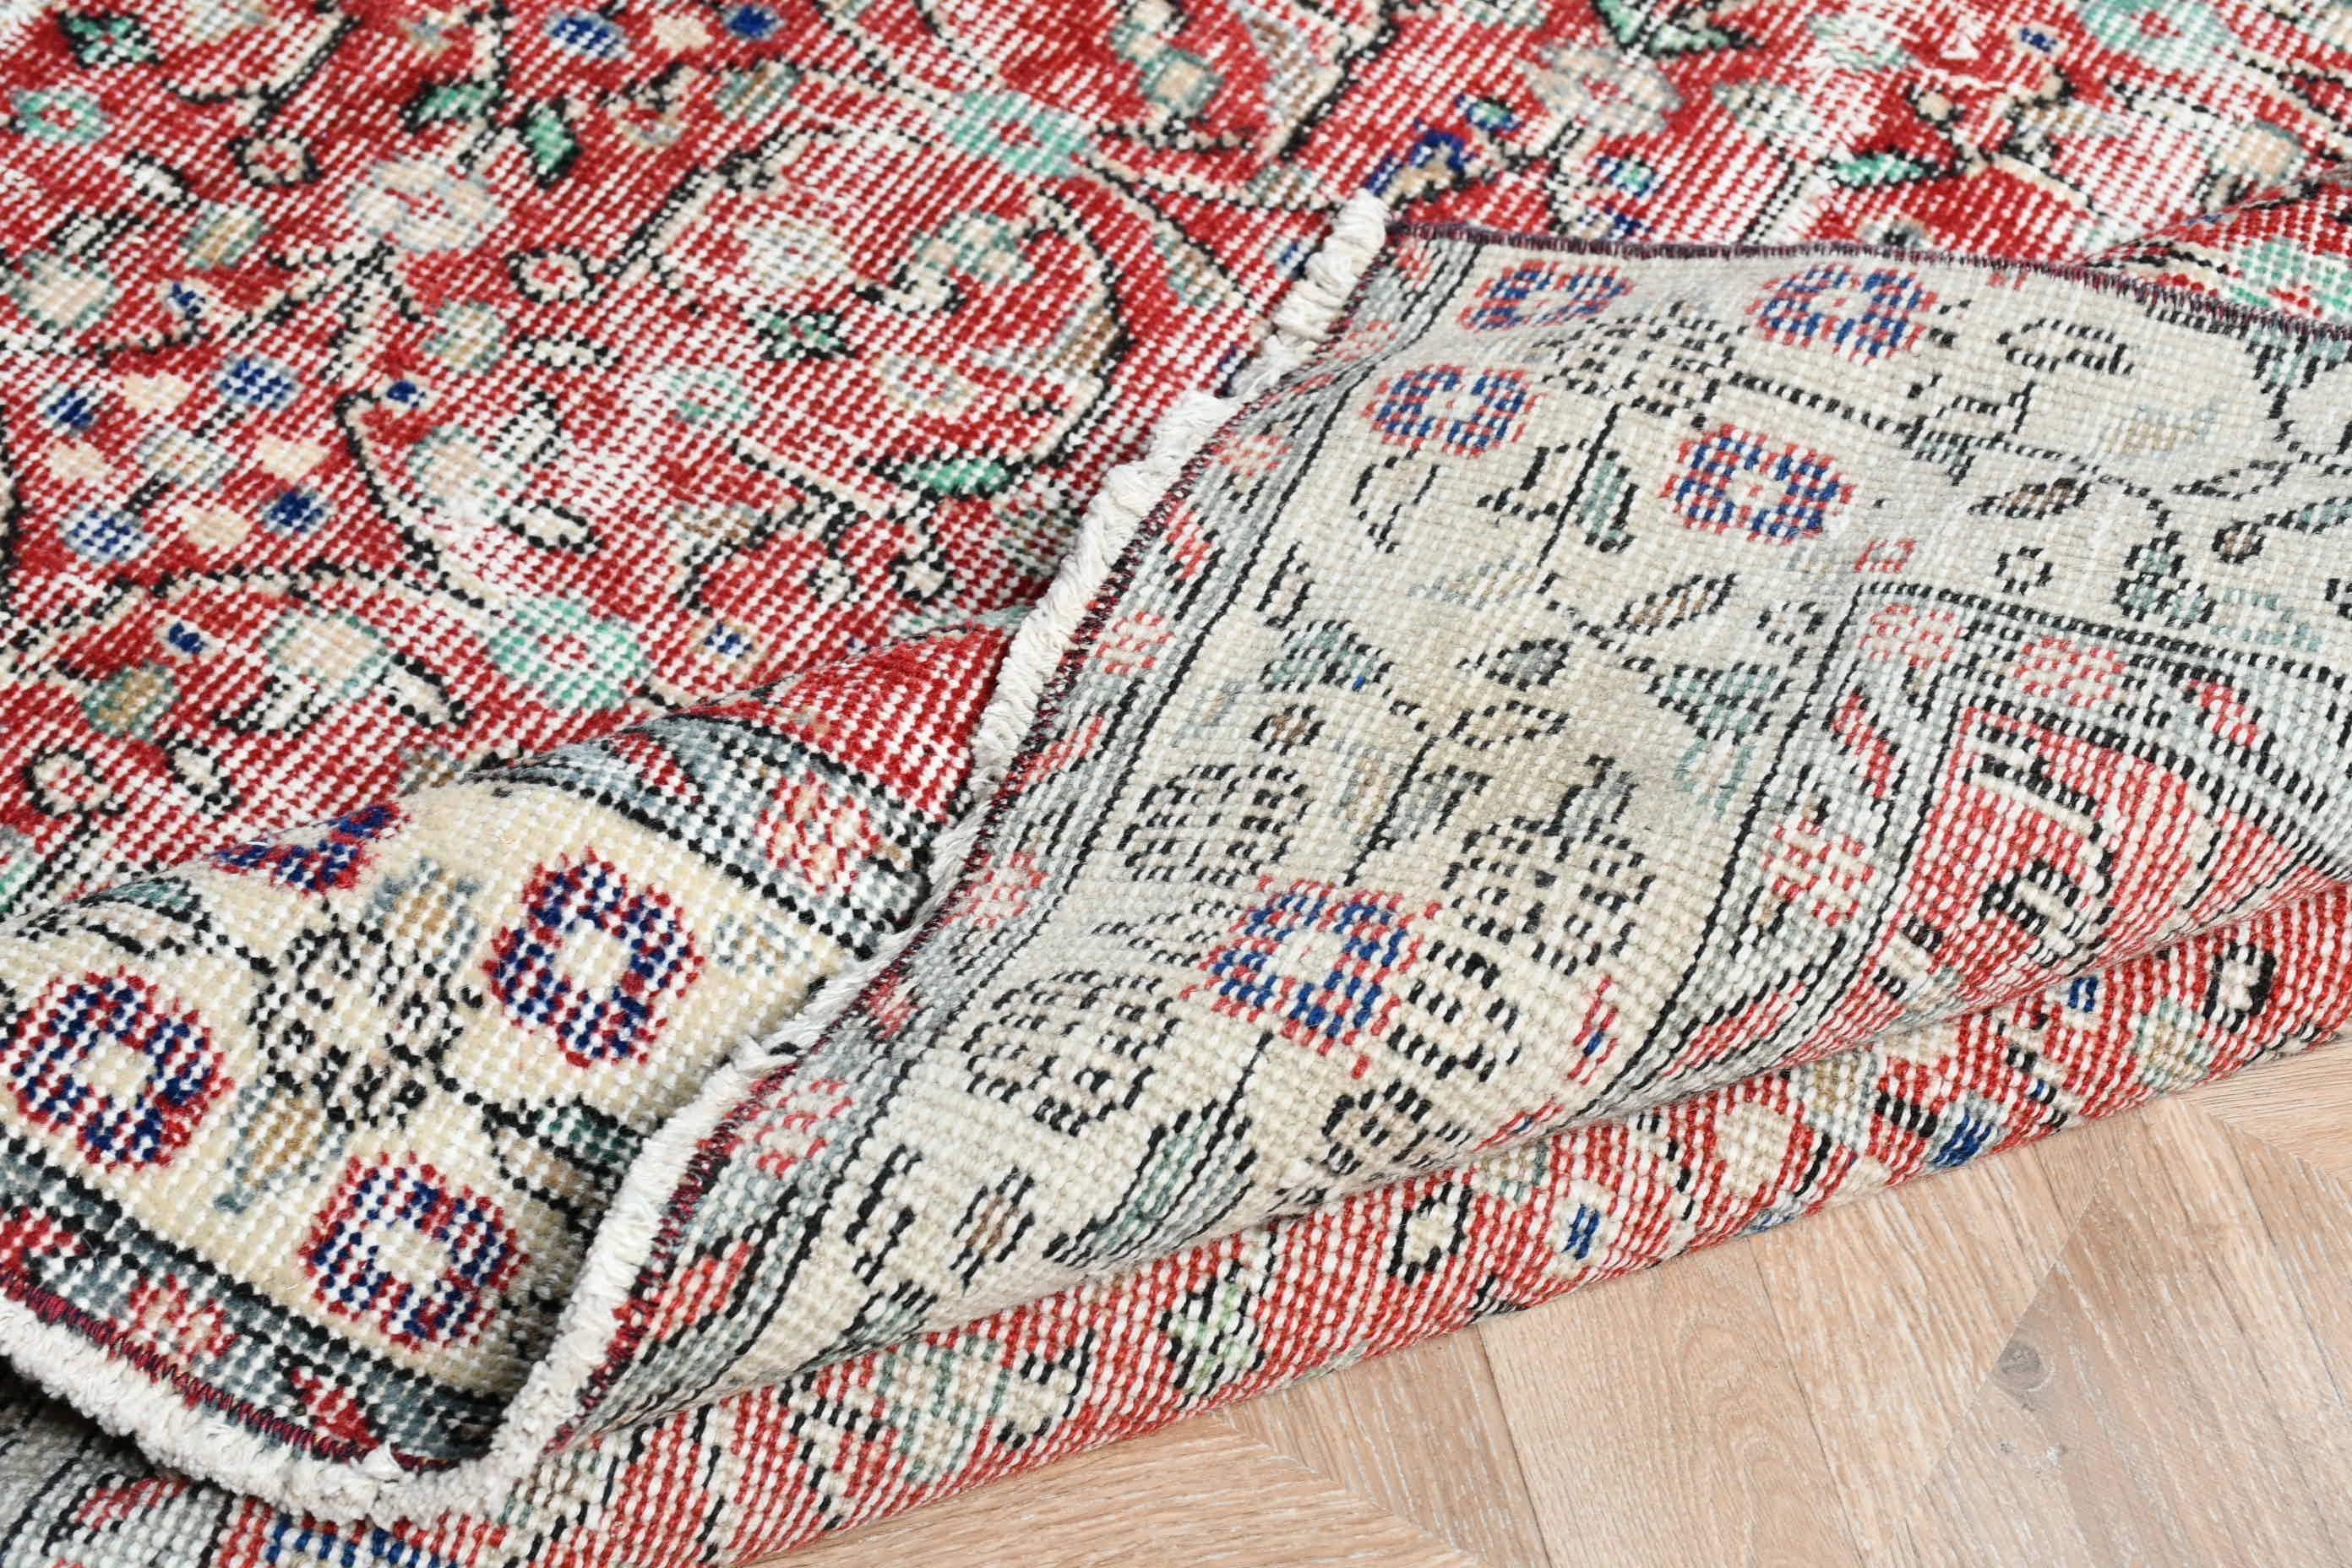 Bedroom Rug, Oriental Rug, Red  5.5x8.9 ft Large Rugs, Vintage Rug, Turkish Rug, Rugs for Living Room, Dining Room Rugs